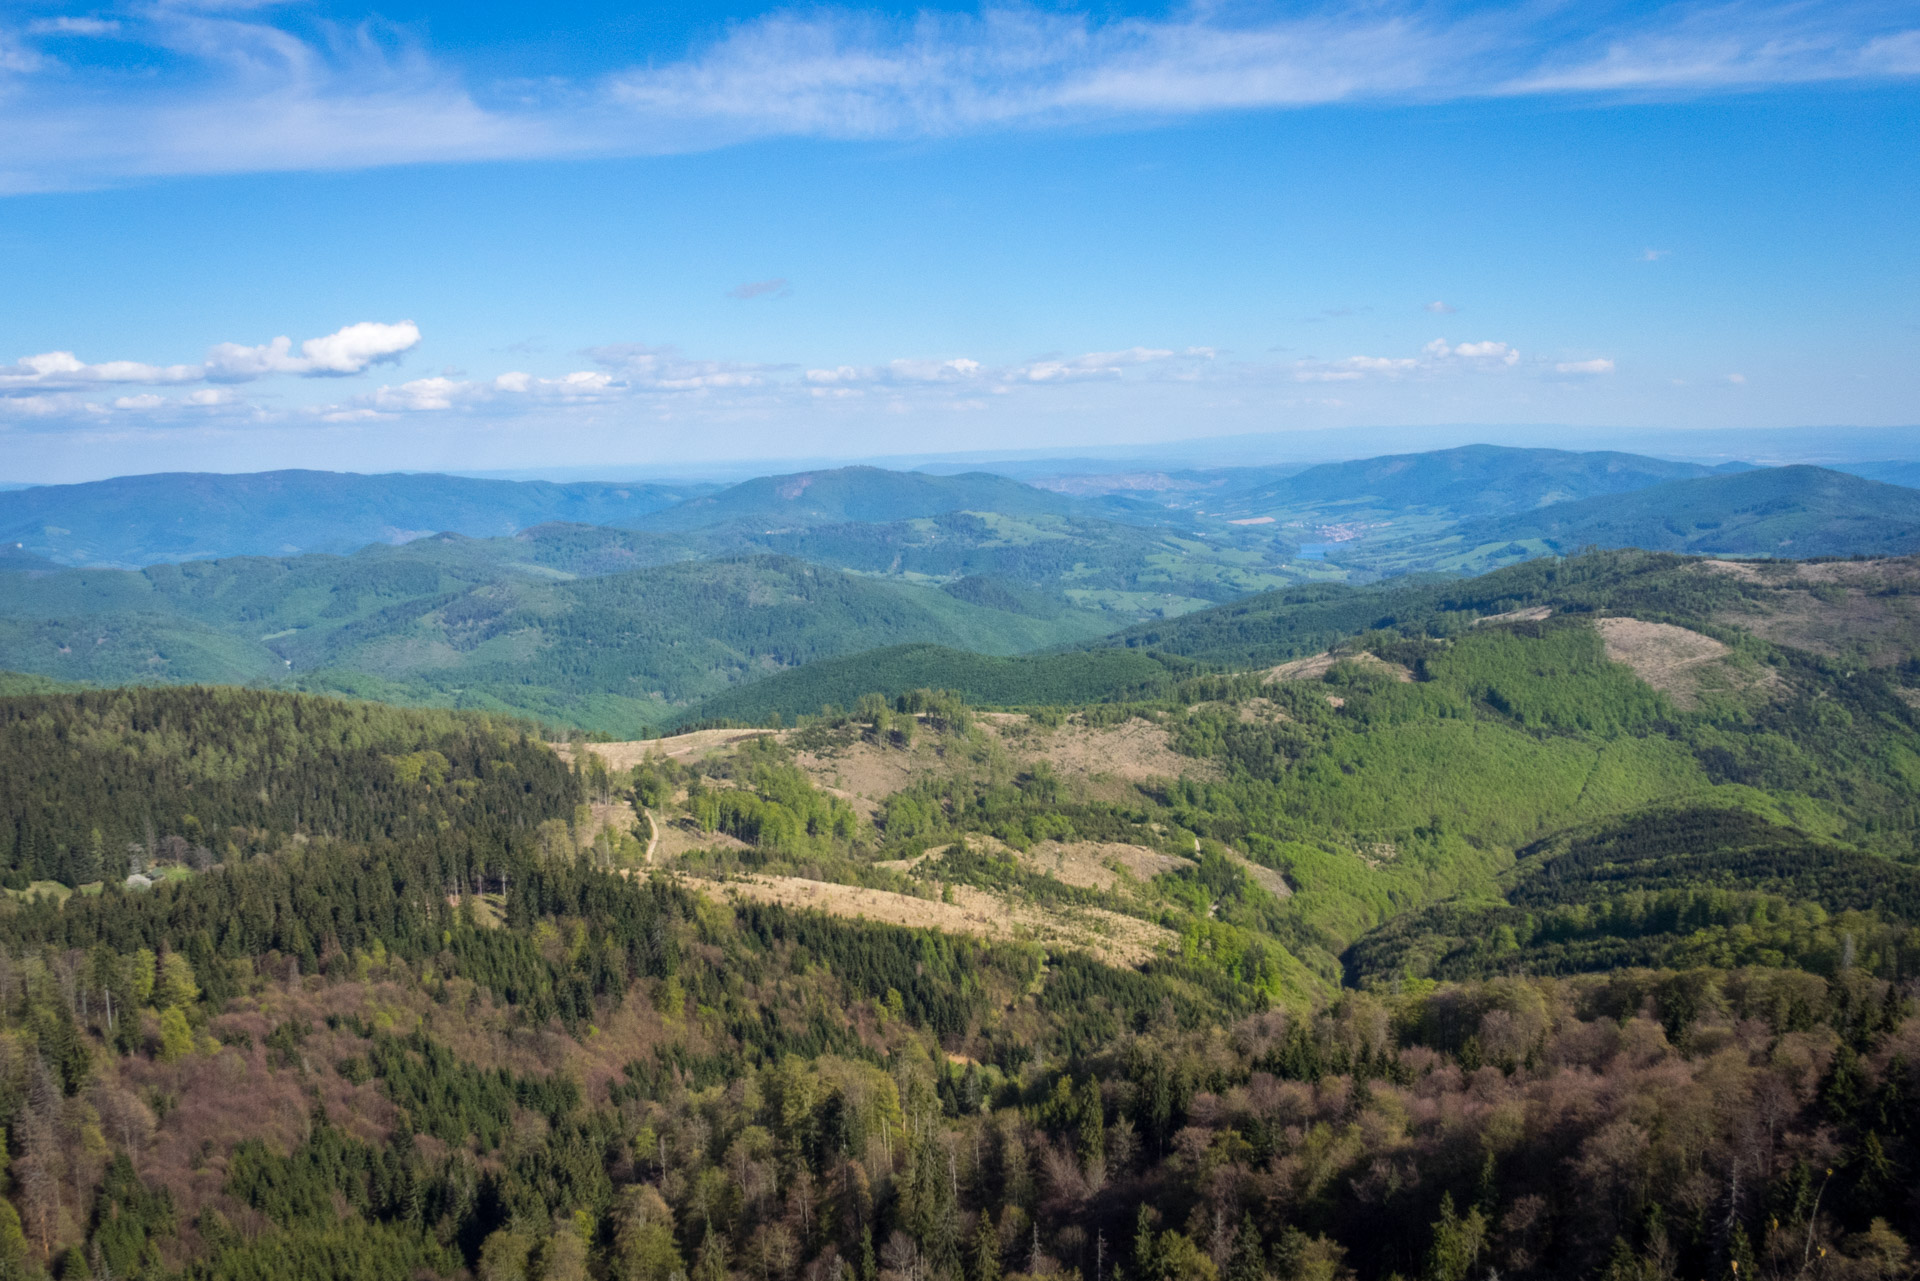 Hrebeňovka Slovenského Rudohoria (1. deň) (Veporské vrchy)